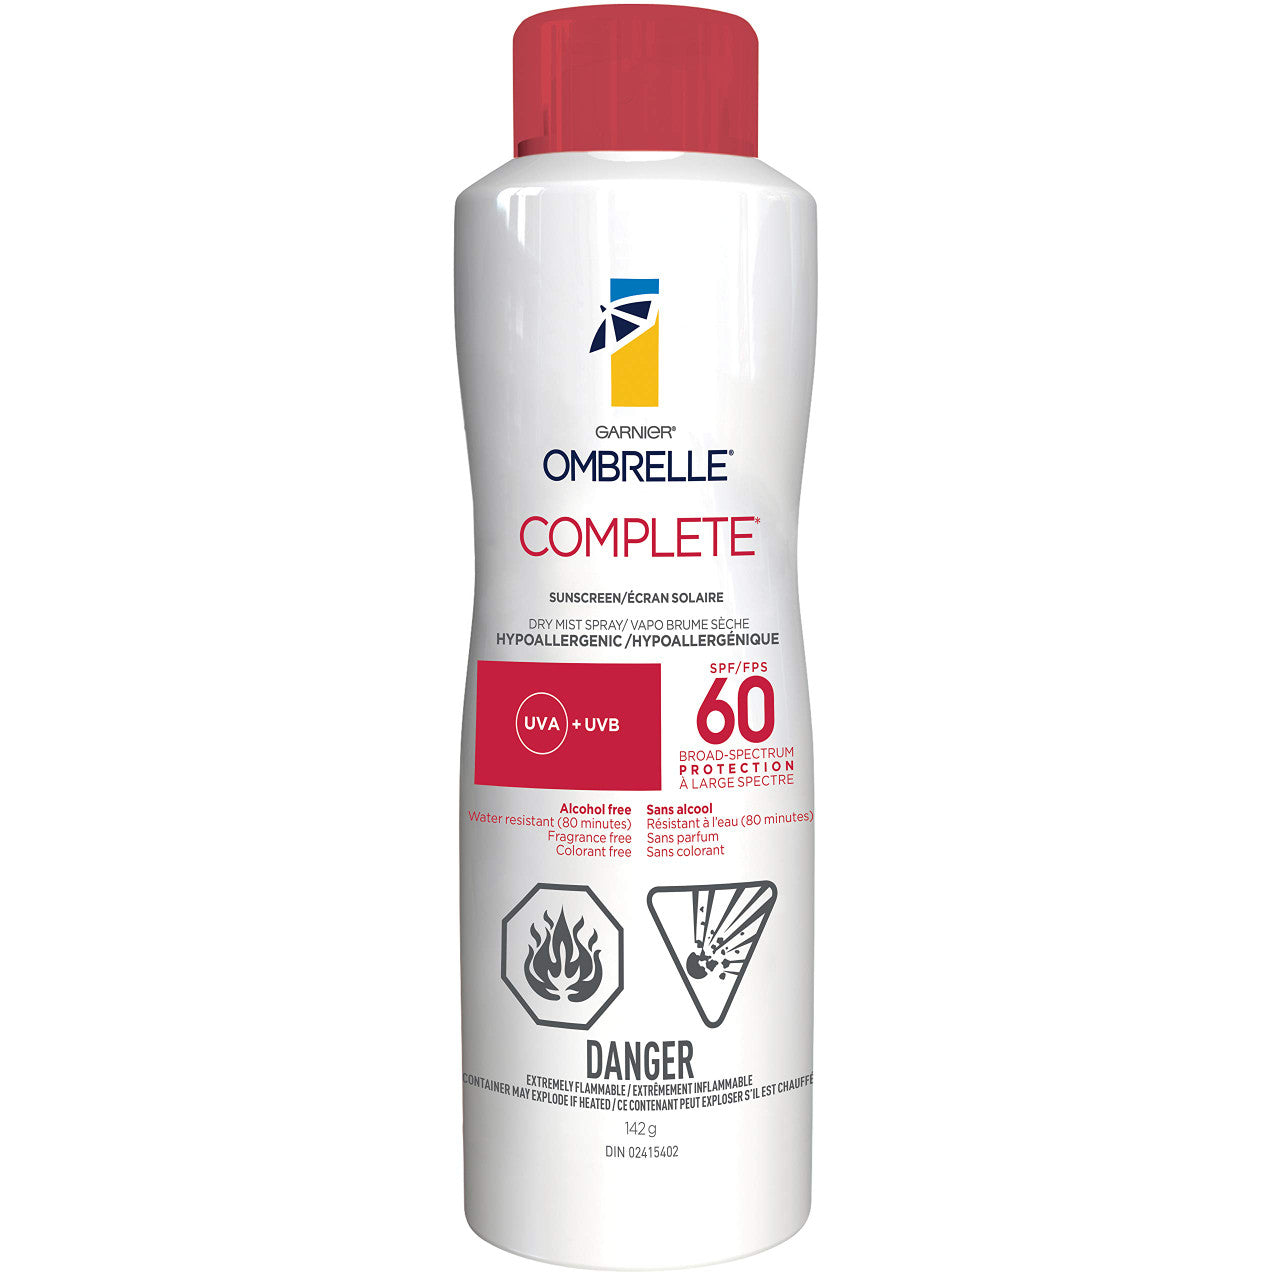 Garnier Ombrelle Complete Body Sun Protection Lotion Spray SPF 60, 142g